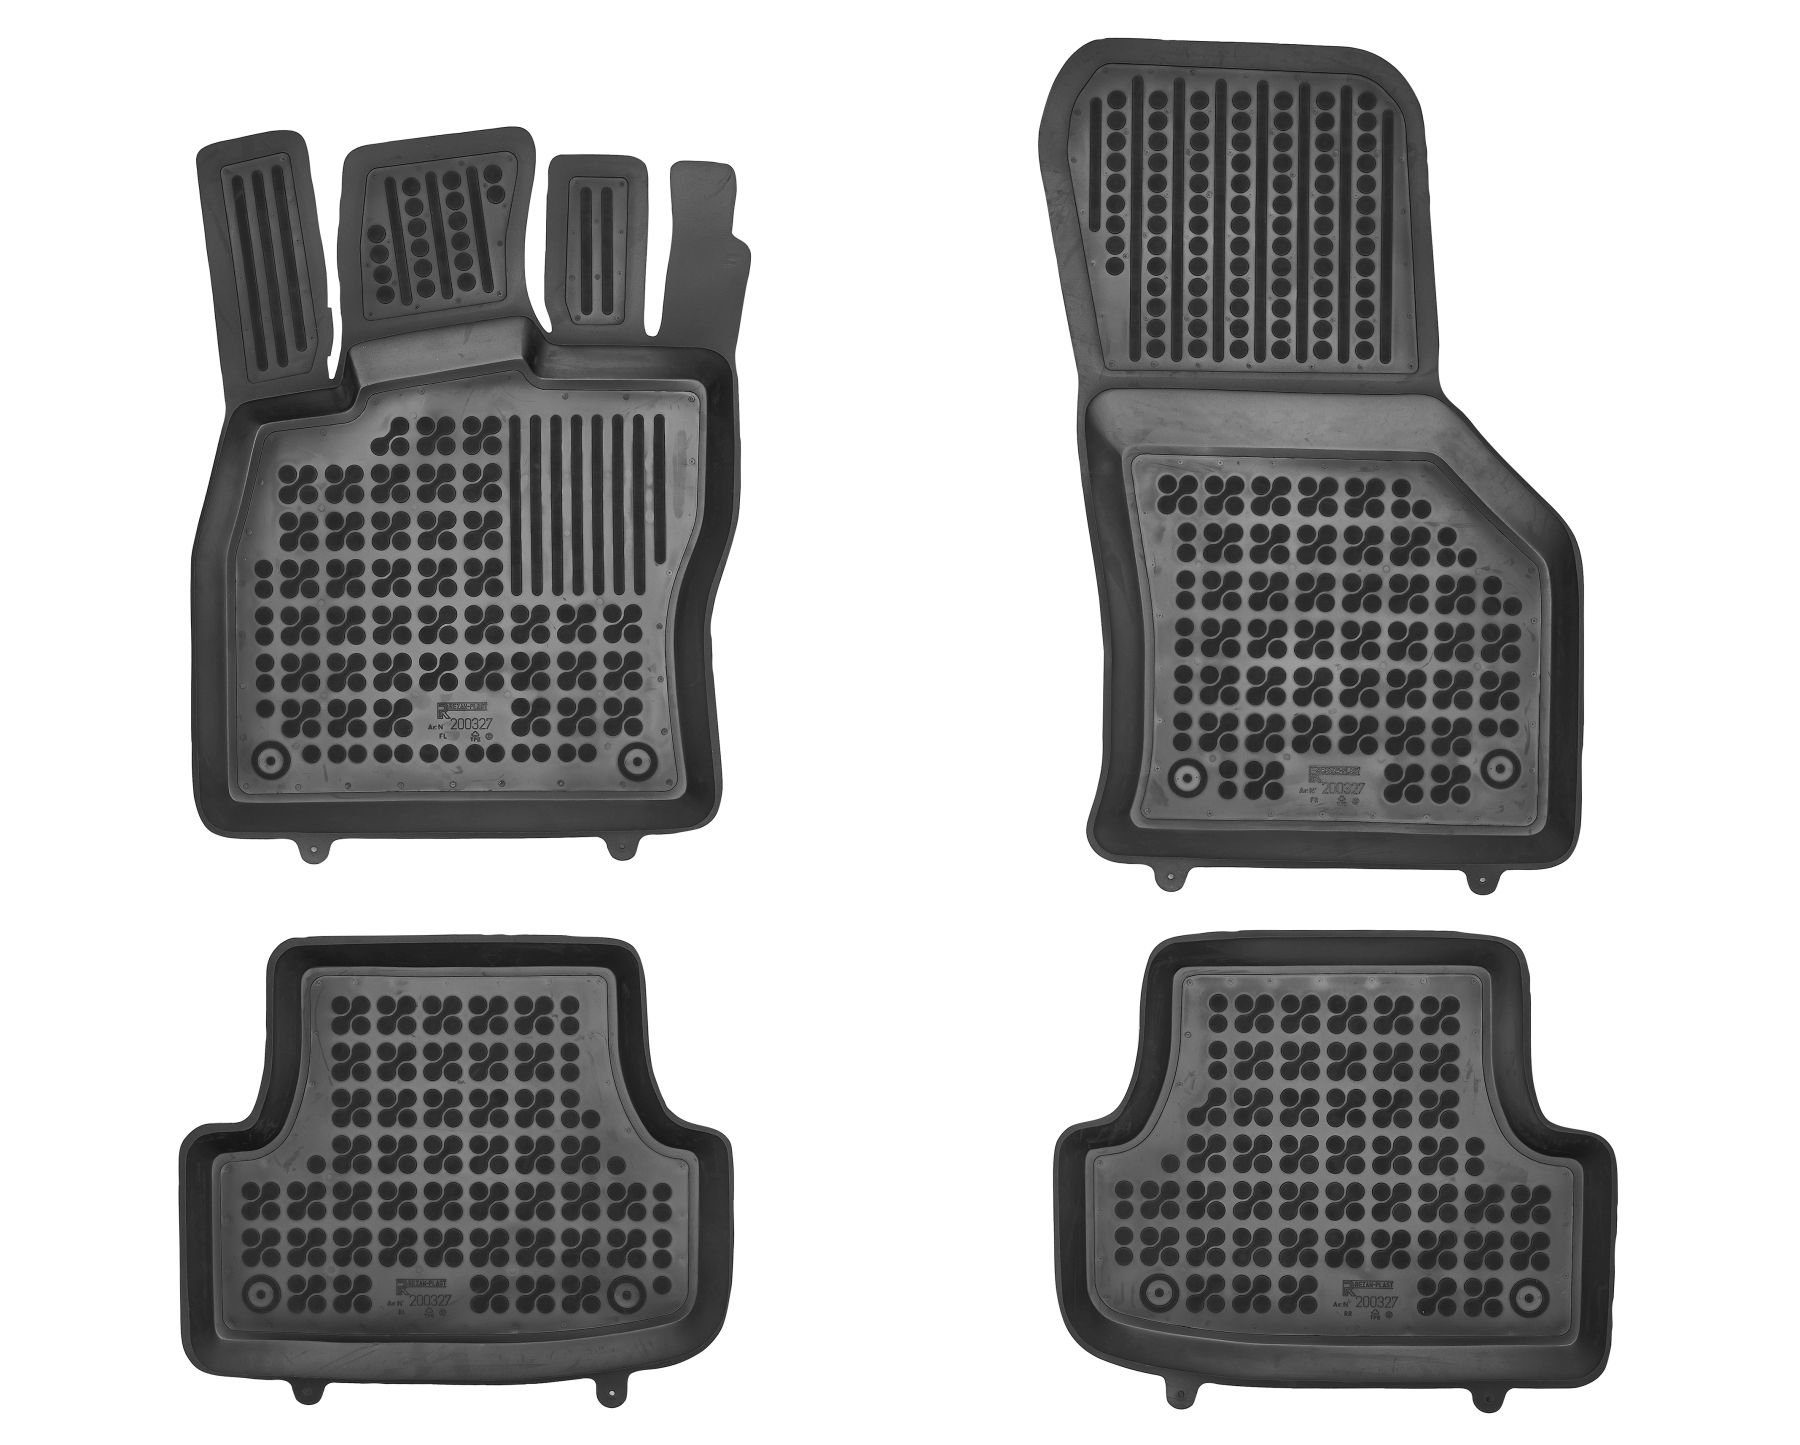 AZUGA Auto-Fußmatten Hohe Gummi-Fußmatten passend für Audi A3 Sportback/Stufenheck ab 5/202, für Audi A3 4-türer Stufenheck,5-türer Sportback